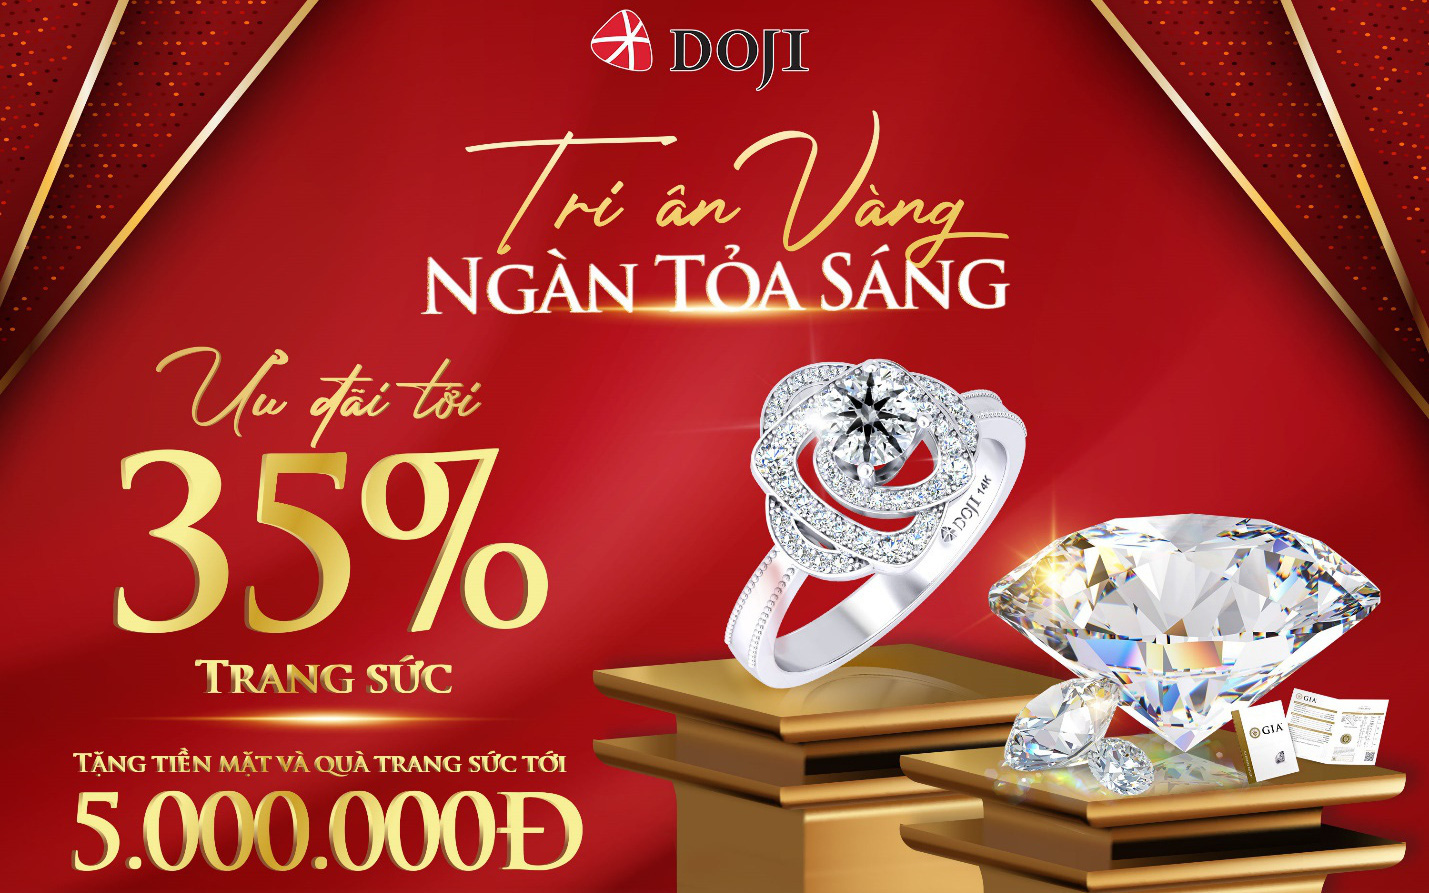 DOJI - Thương hiệu trang sức hàng đầu thị trường Việt Nam gửi tặng siêu ưu đãi tới 35%